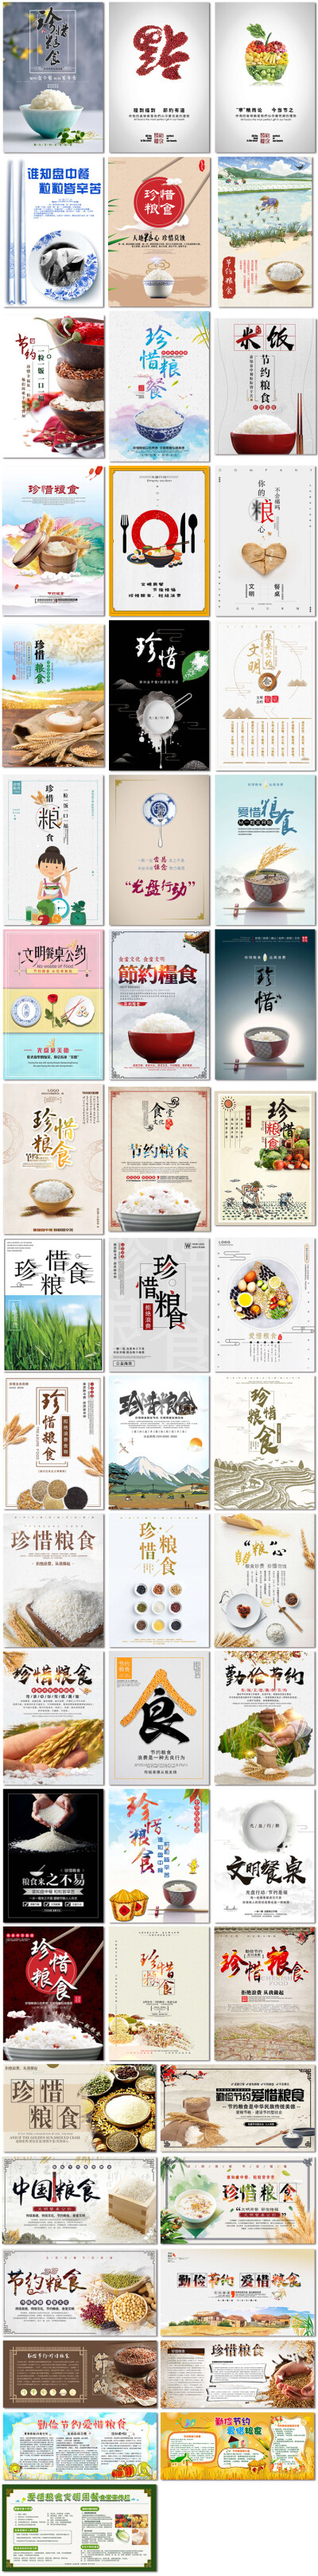 世界粮食日勤俭节约爱惜粮食米饭公益展板报海报设计PSD模板素材